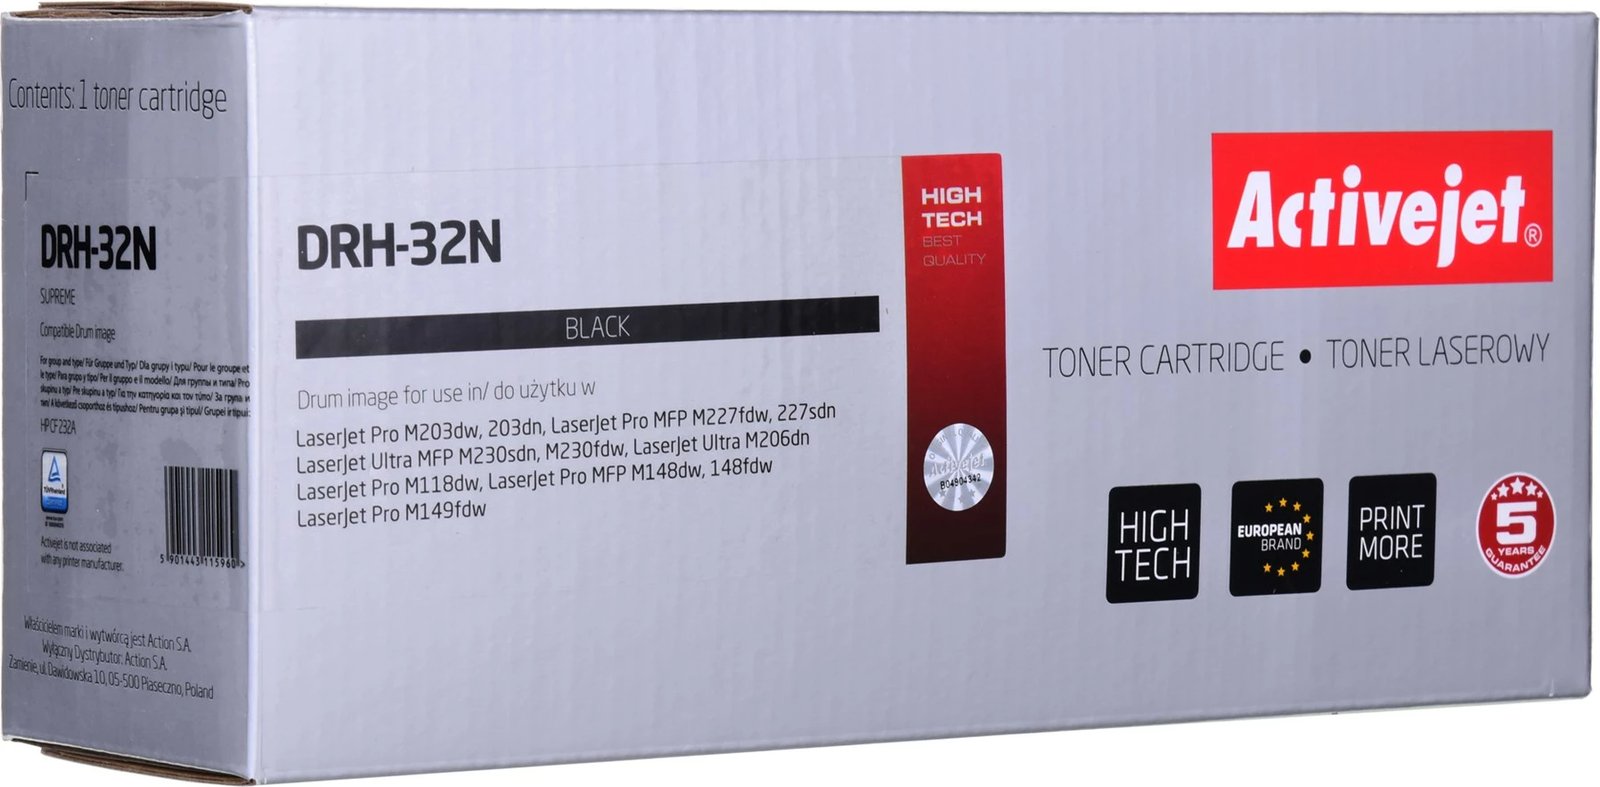 Ngjyrë zëvendësues Activejet DRH-32N për printer HP, e zezë 